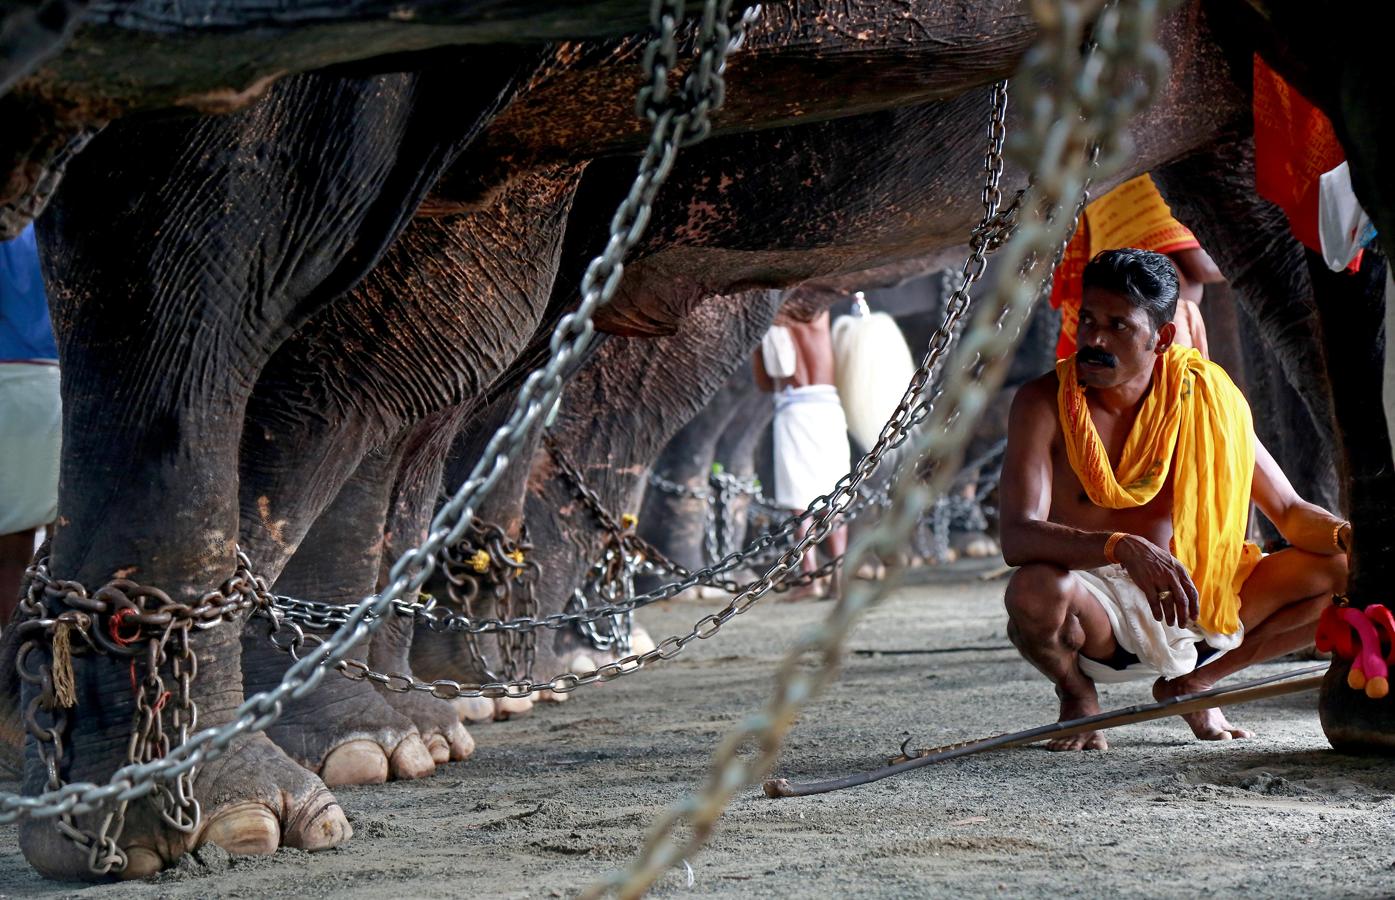 El festival anual Vrischikolasavam ya ha comenzado en el Templo Sree Poornathrayeesa de Kochi, India. Esta festividad dura ocho días y presenta una colorida procesión de elefantes decorados junto al sonido de tambores.